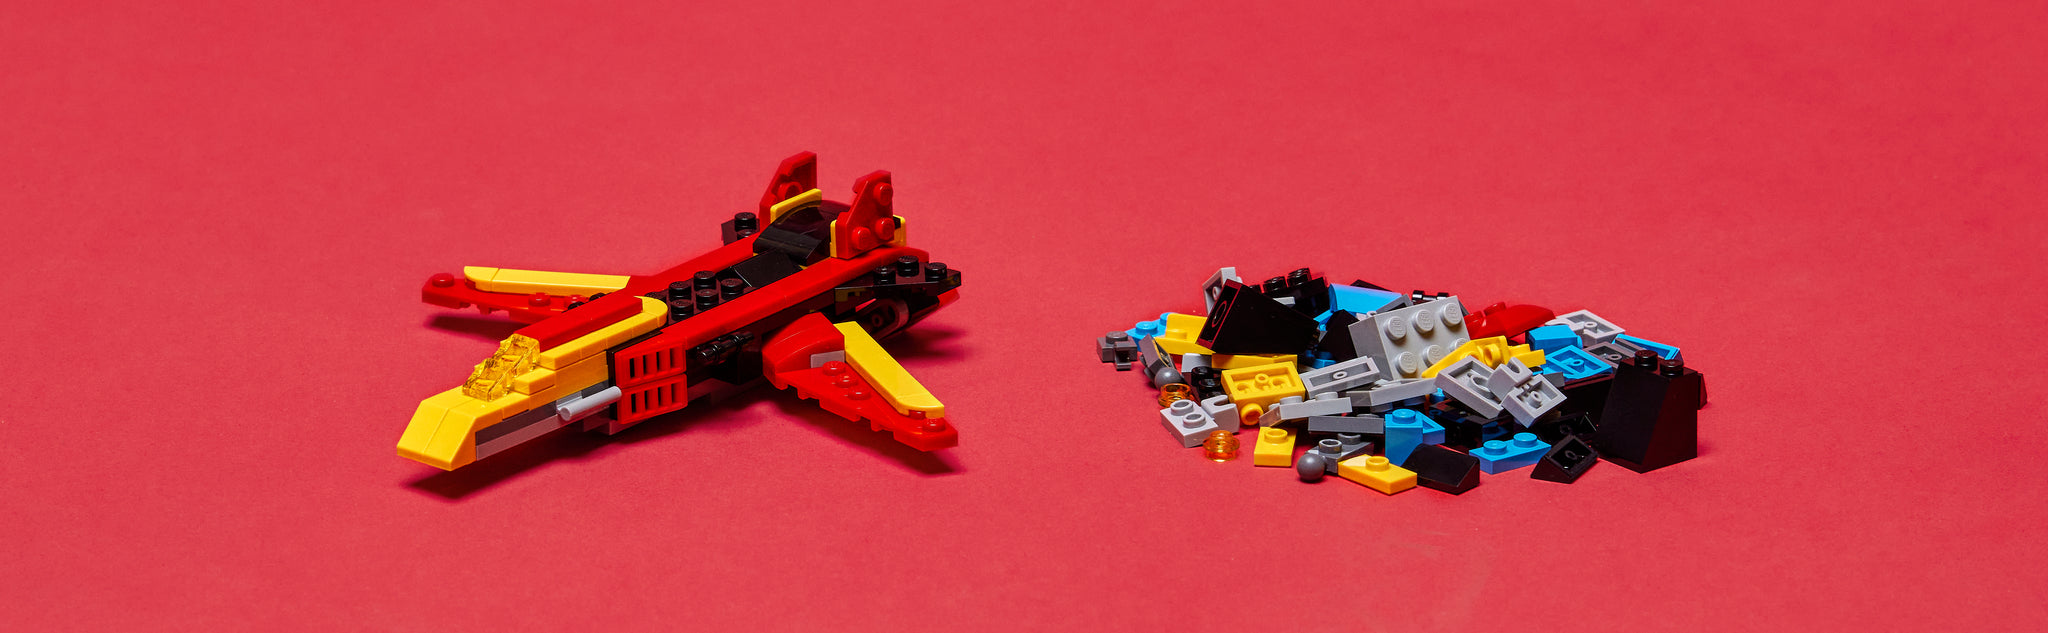 LEGO 31124 Superrobot Creator 3-in-1